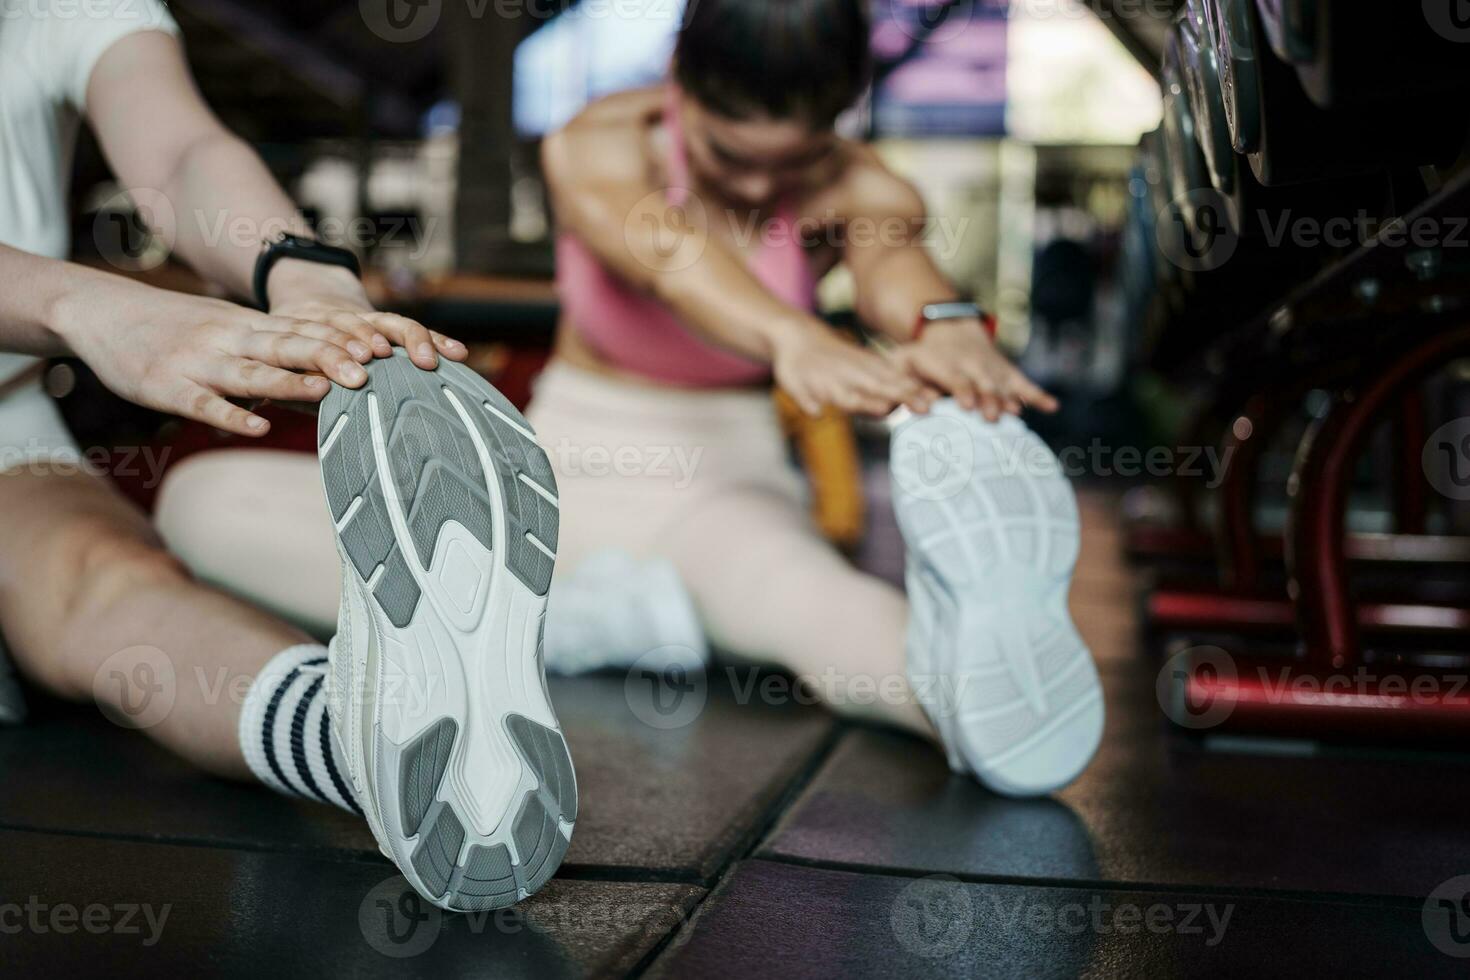 kondition, stretching och två kvinna på Gym för en värma upp träna, Träning och kropp wellness med träning. ung sporter kvinna eller idrottare på golv till sträcka ben för stark muskel, balans och energi. foto